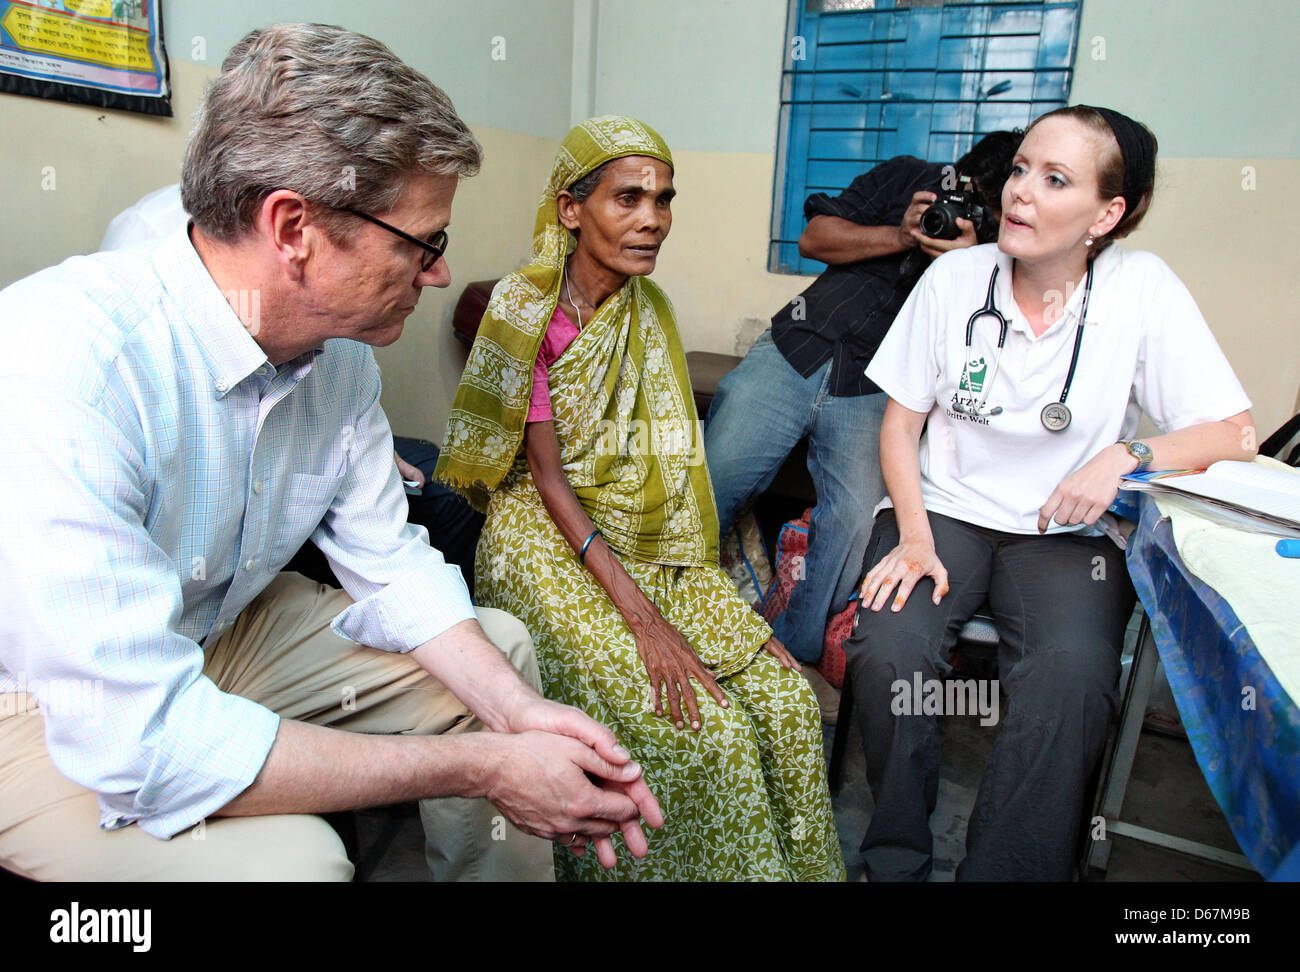 Bundesaußenminister Guido Westerwelle (FDP) und die Ärztin Louise Kühne sitzen mit einer unterernährten Patientin am Samstag (23.06.2012) en einer Arztpraxis der Hilfsorganization "Ärzte für die 3. Welt' im von Korail tugurios en Dhaka (Bangladesch). Hier die deutsche Ärzte versorgen ehrenamtlich Bedürftigen. Foto: Jan Woitas dpa +++(c) dpa - Bildfunk+++ Foto de stock